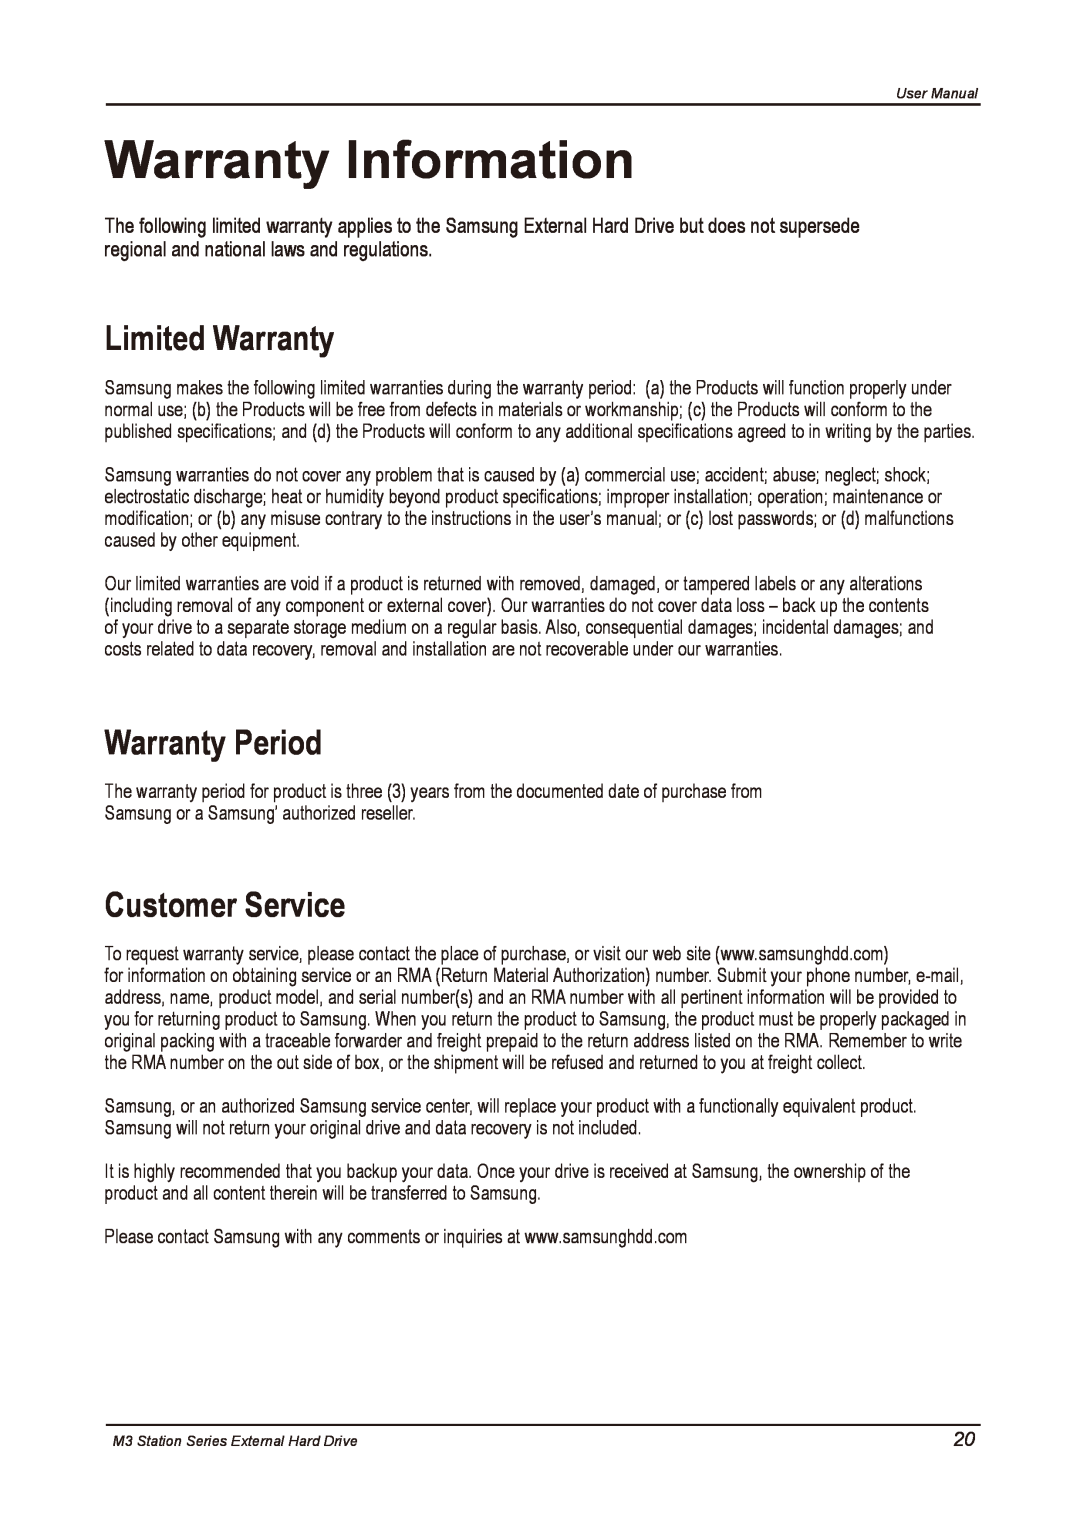 Samsung HX-M500UAY, HX-M500UAE, HX-M500UAB Warranty Information, Limited Warranty, Warranty Period, Customer Service 